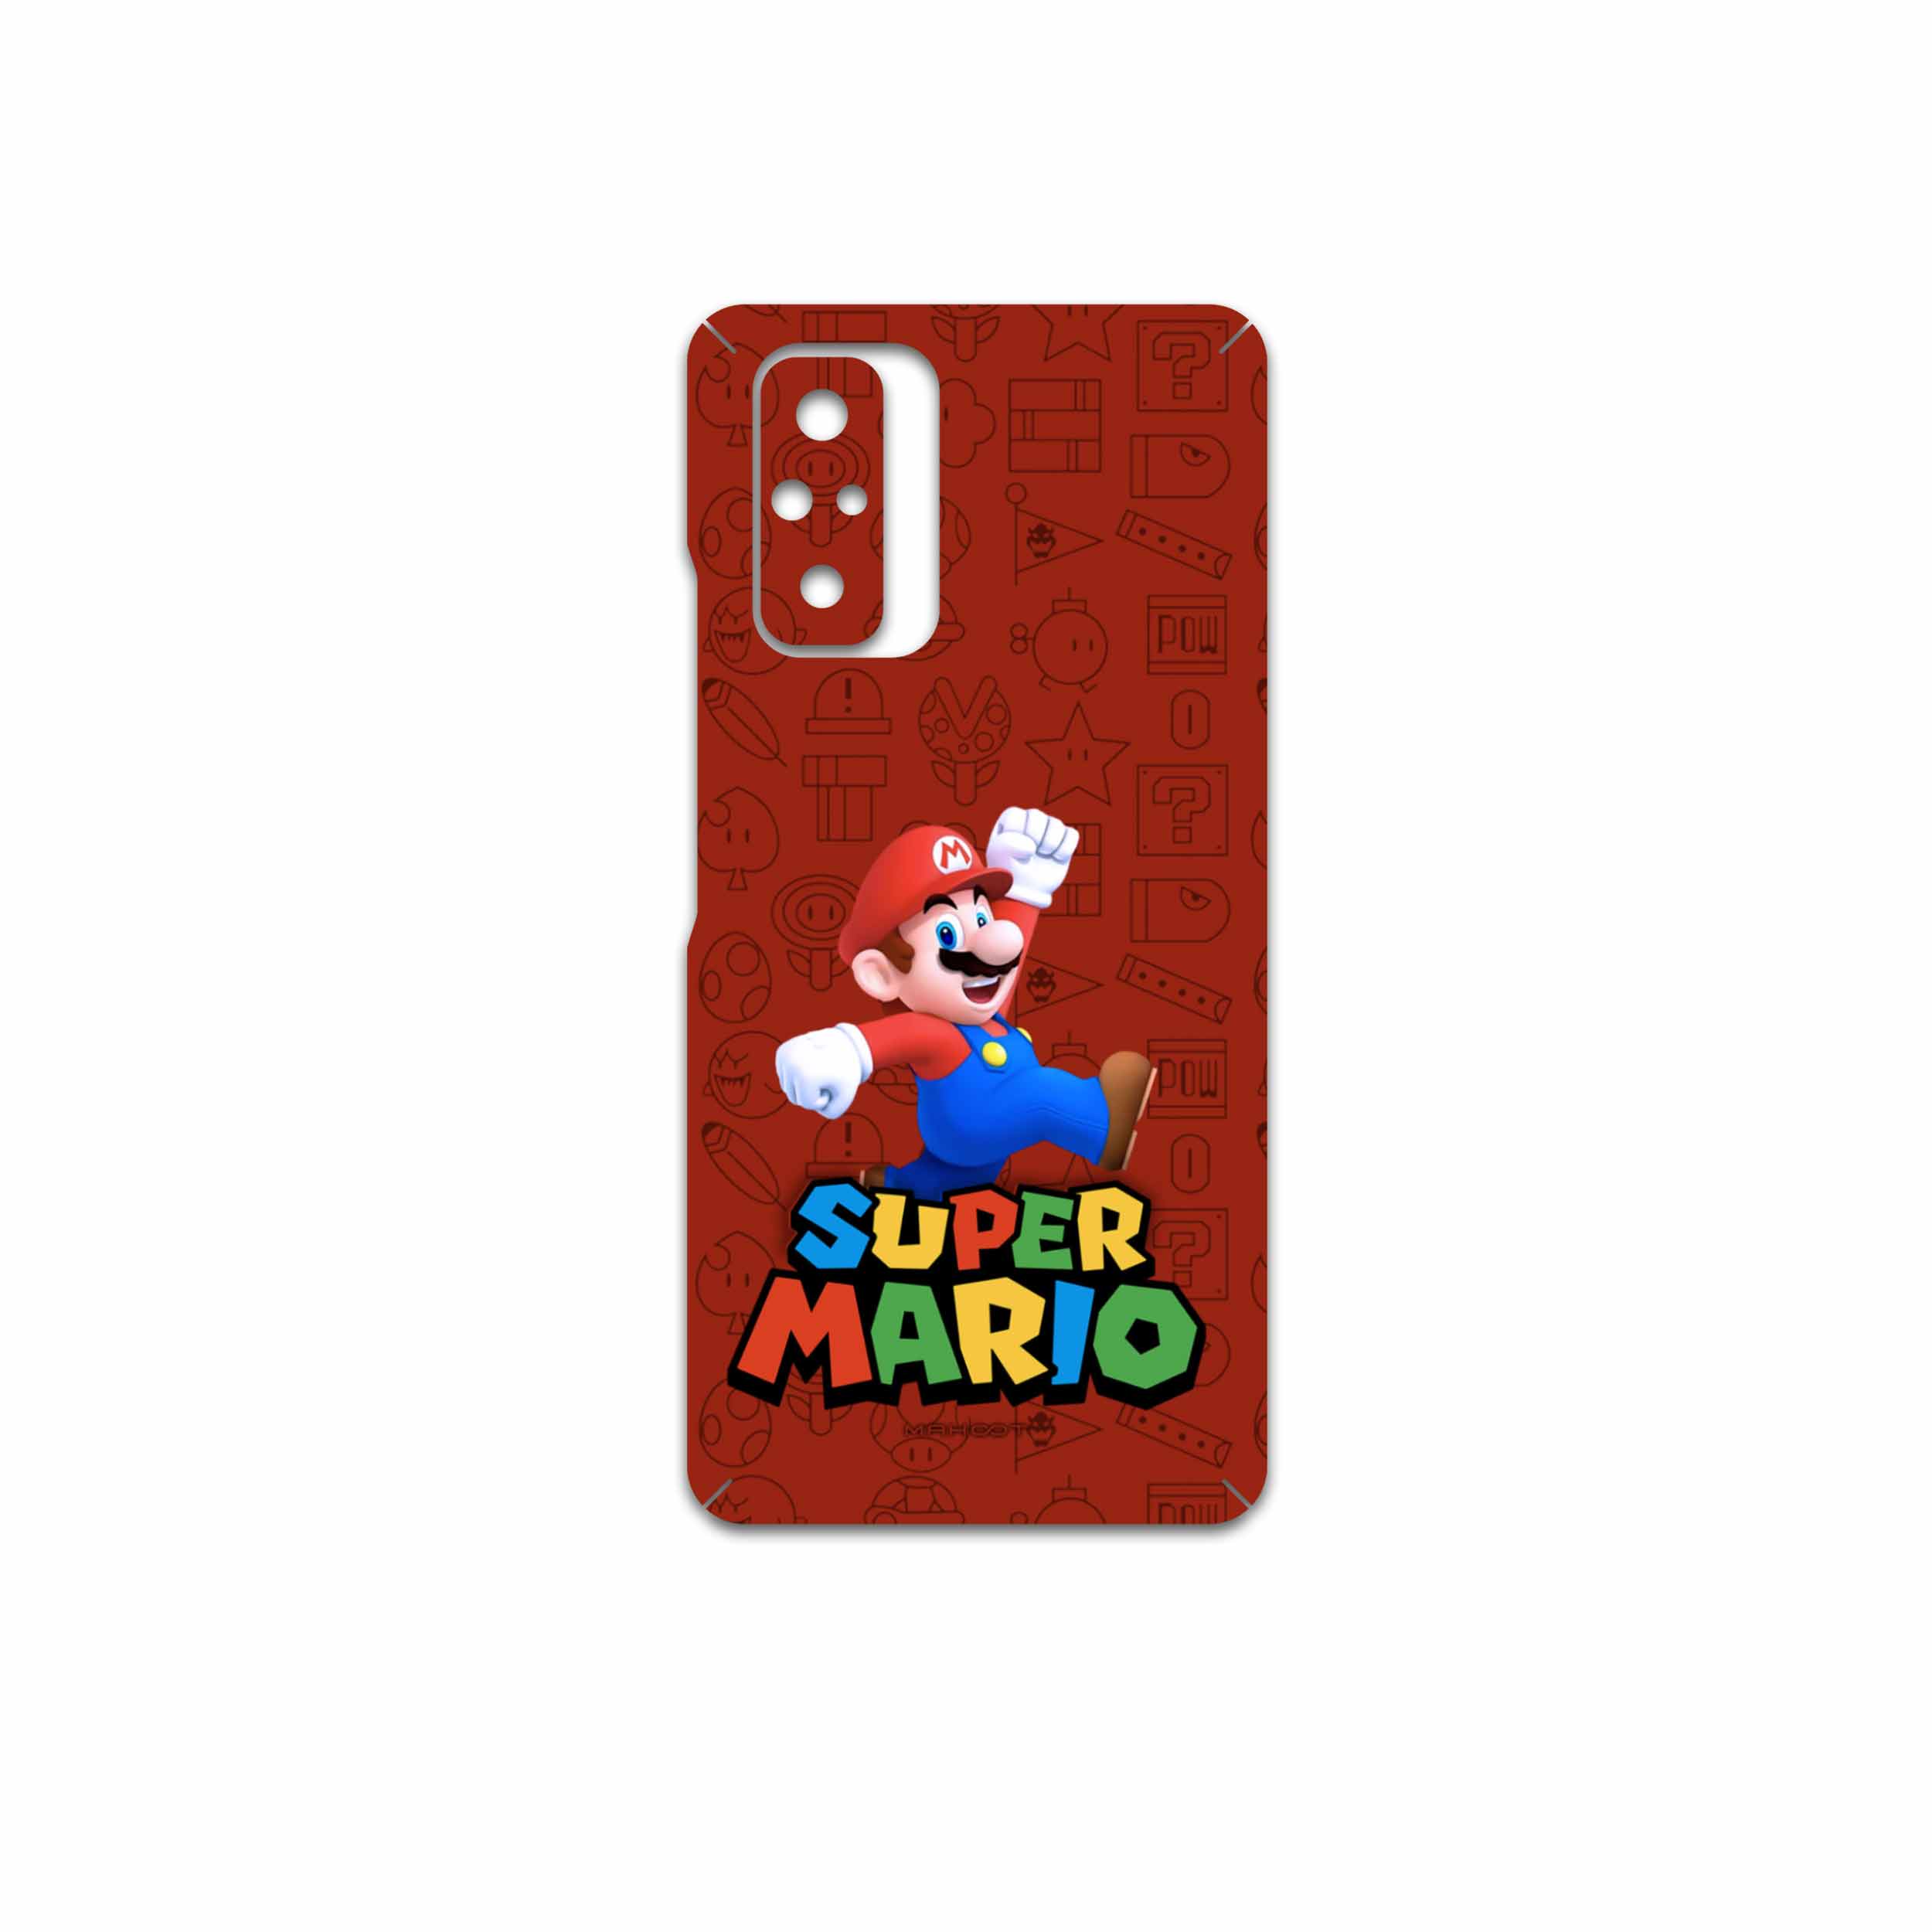 قیمت و خرید برچسب پوششی ماهوت مدل Super-Mario-Game مناسب برای گوشی ...